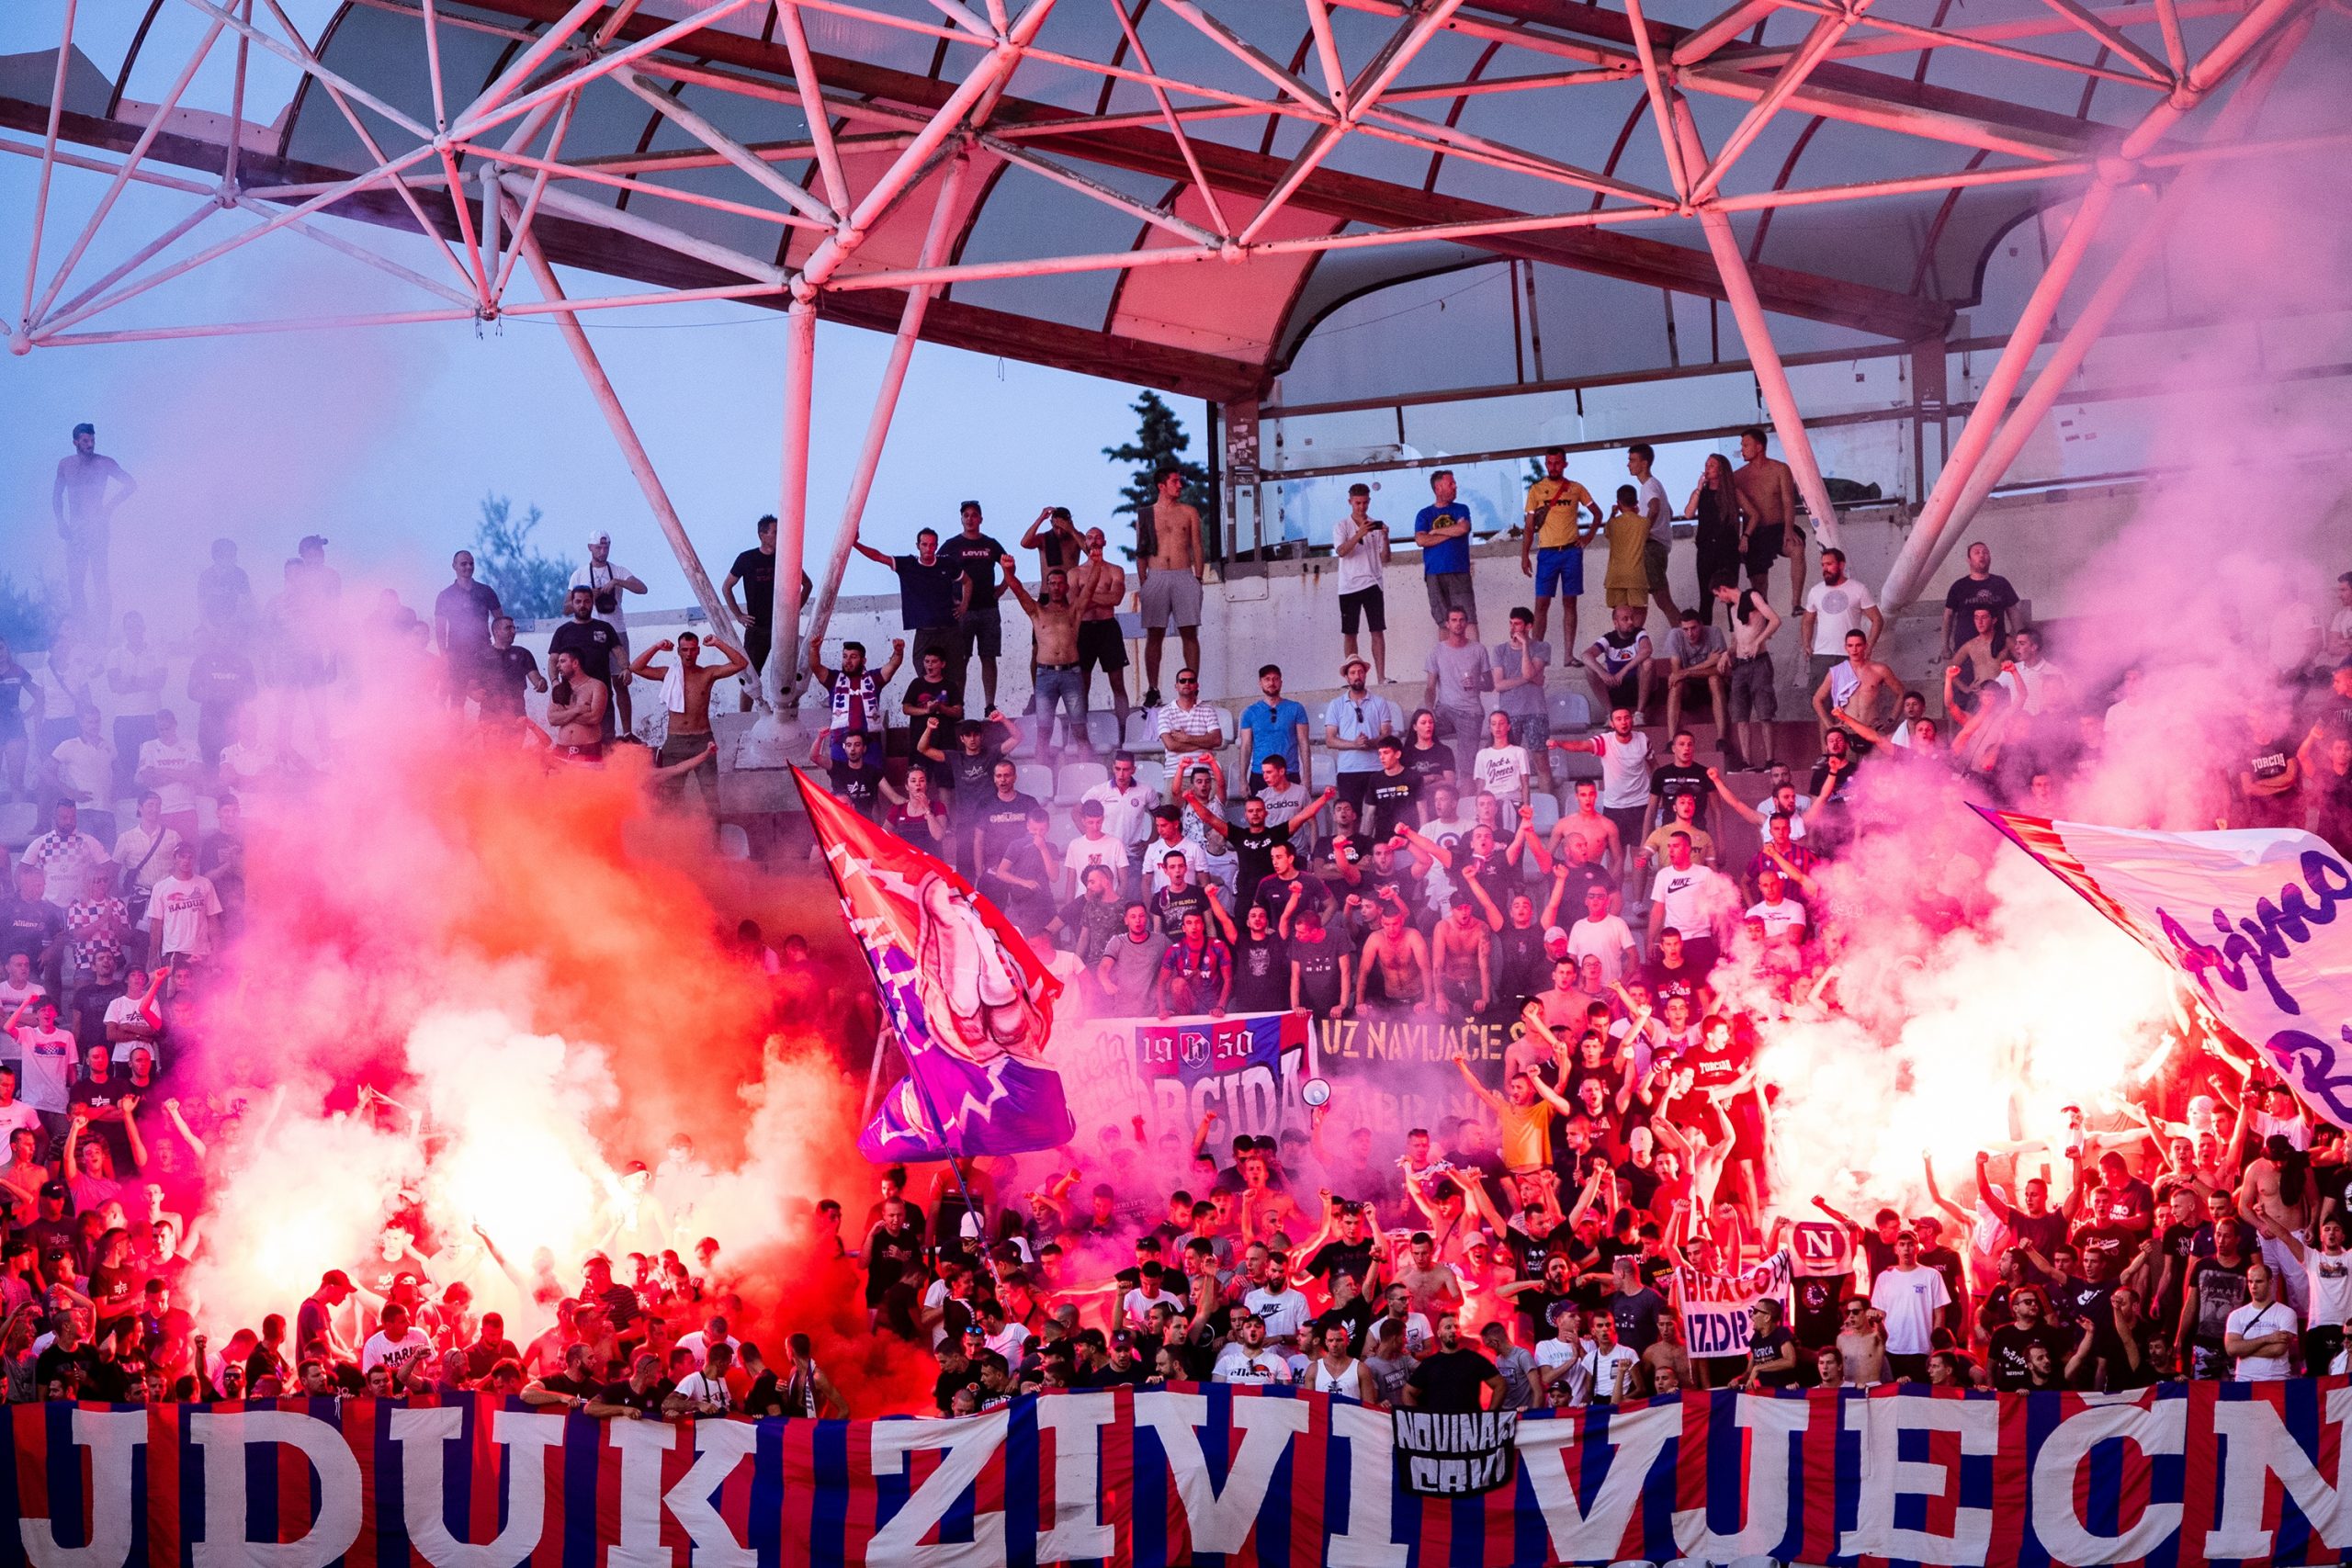 01.08.2021., stadion Poljud, Split - Hrvatski Telekom Prva liga, 03. kolo, HNK Hajduk - HNK Sibenik.
Photo: Milan Sabic/PIXSELL